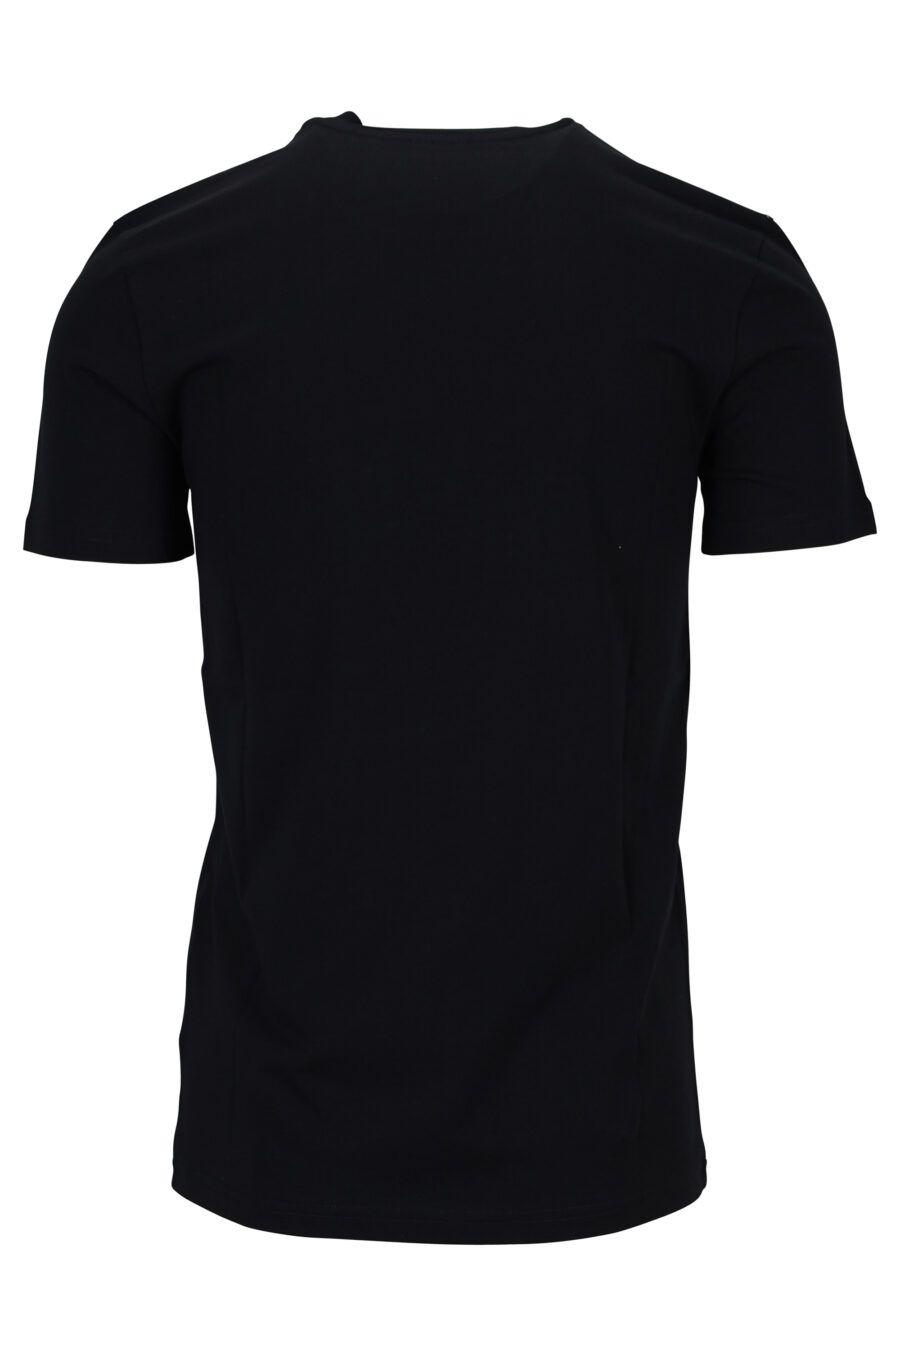 Camiseta negra de algodón orgánico con maxilogo blanco - 889316648973 1